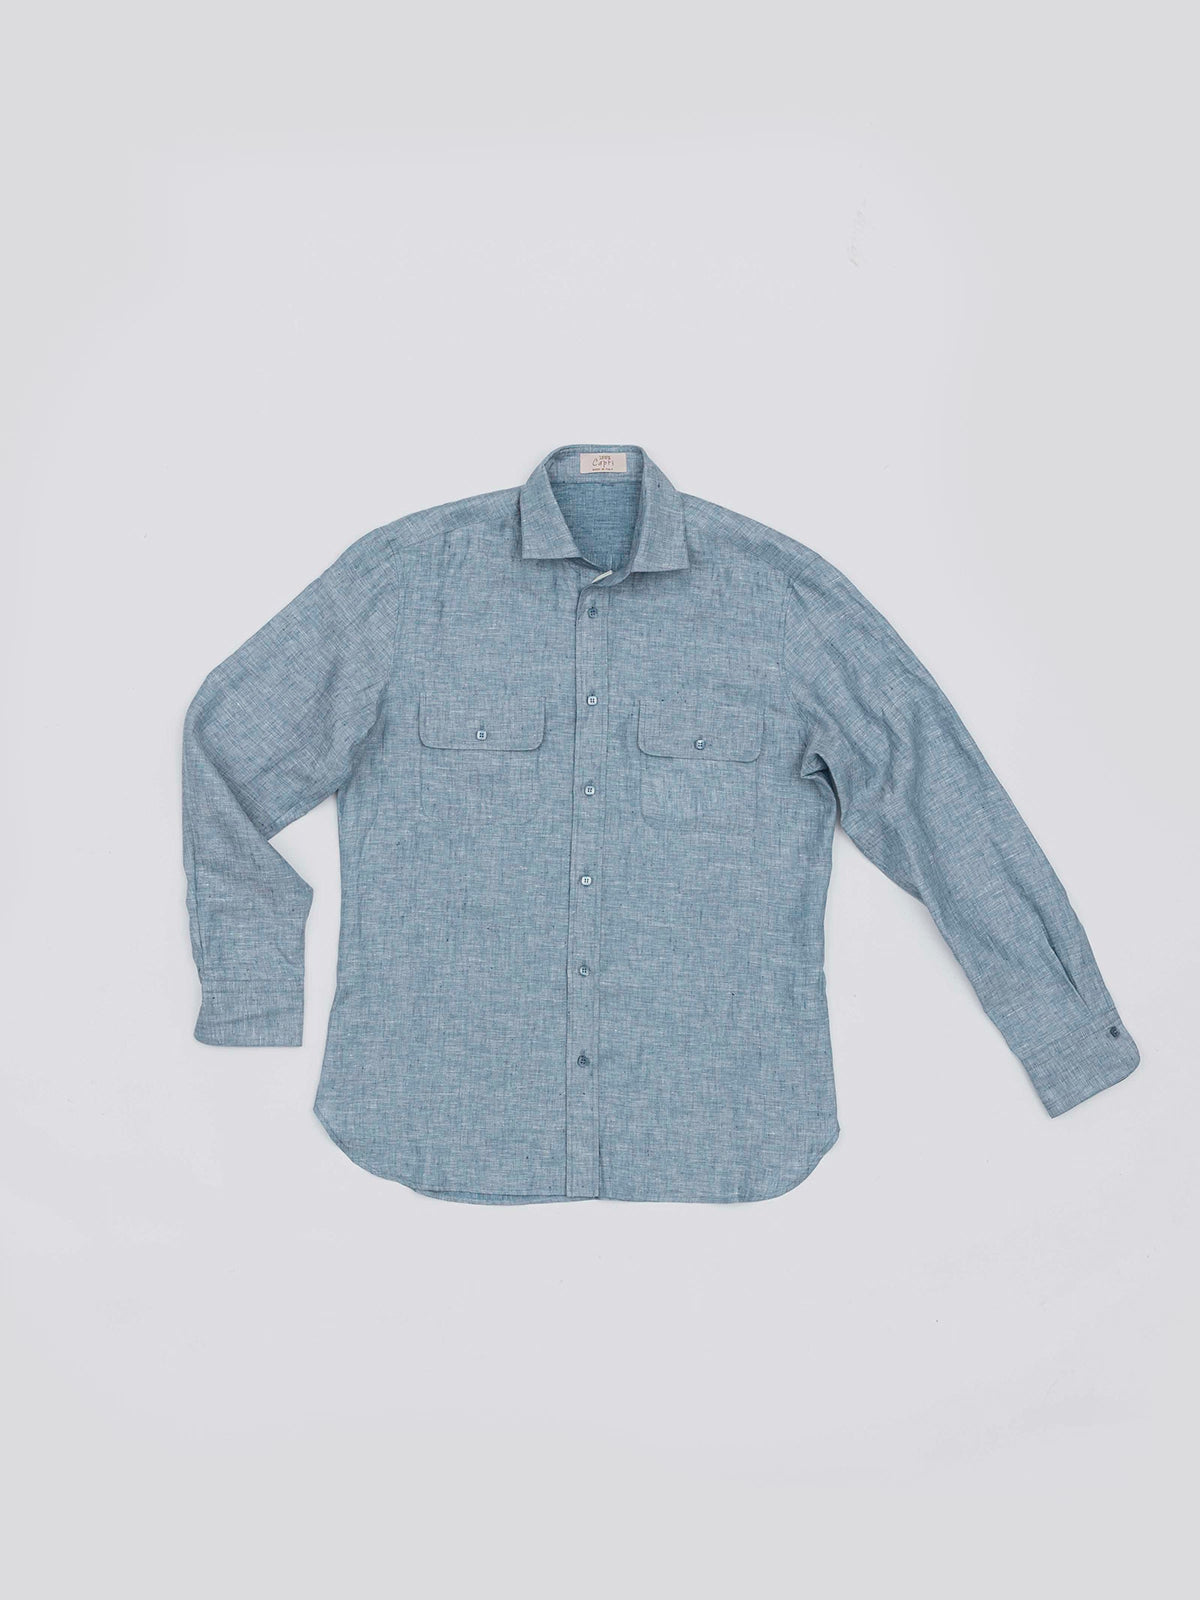 Reversible linen shirt for man 100% Capri linen side dark and light  jeans shirt front 